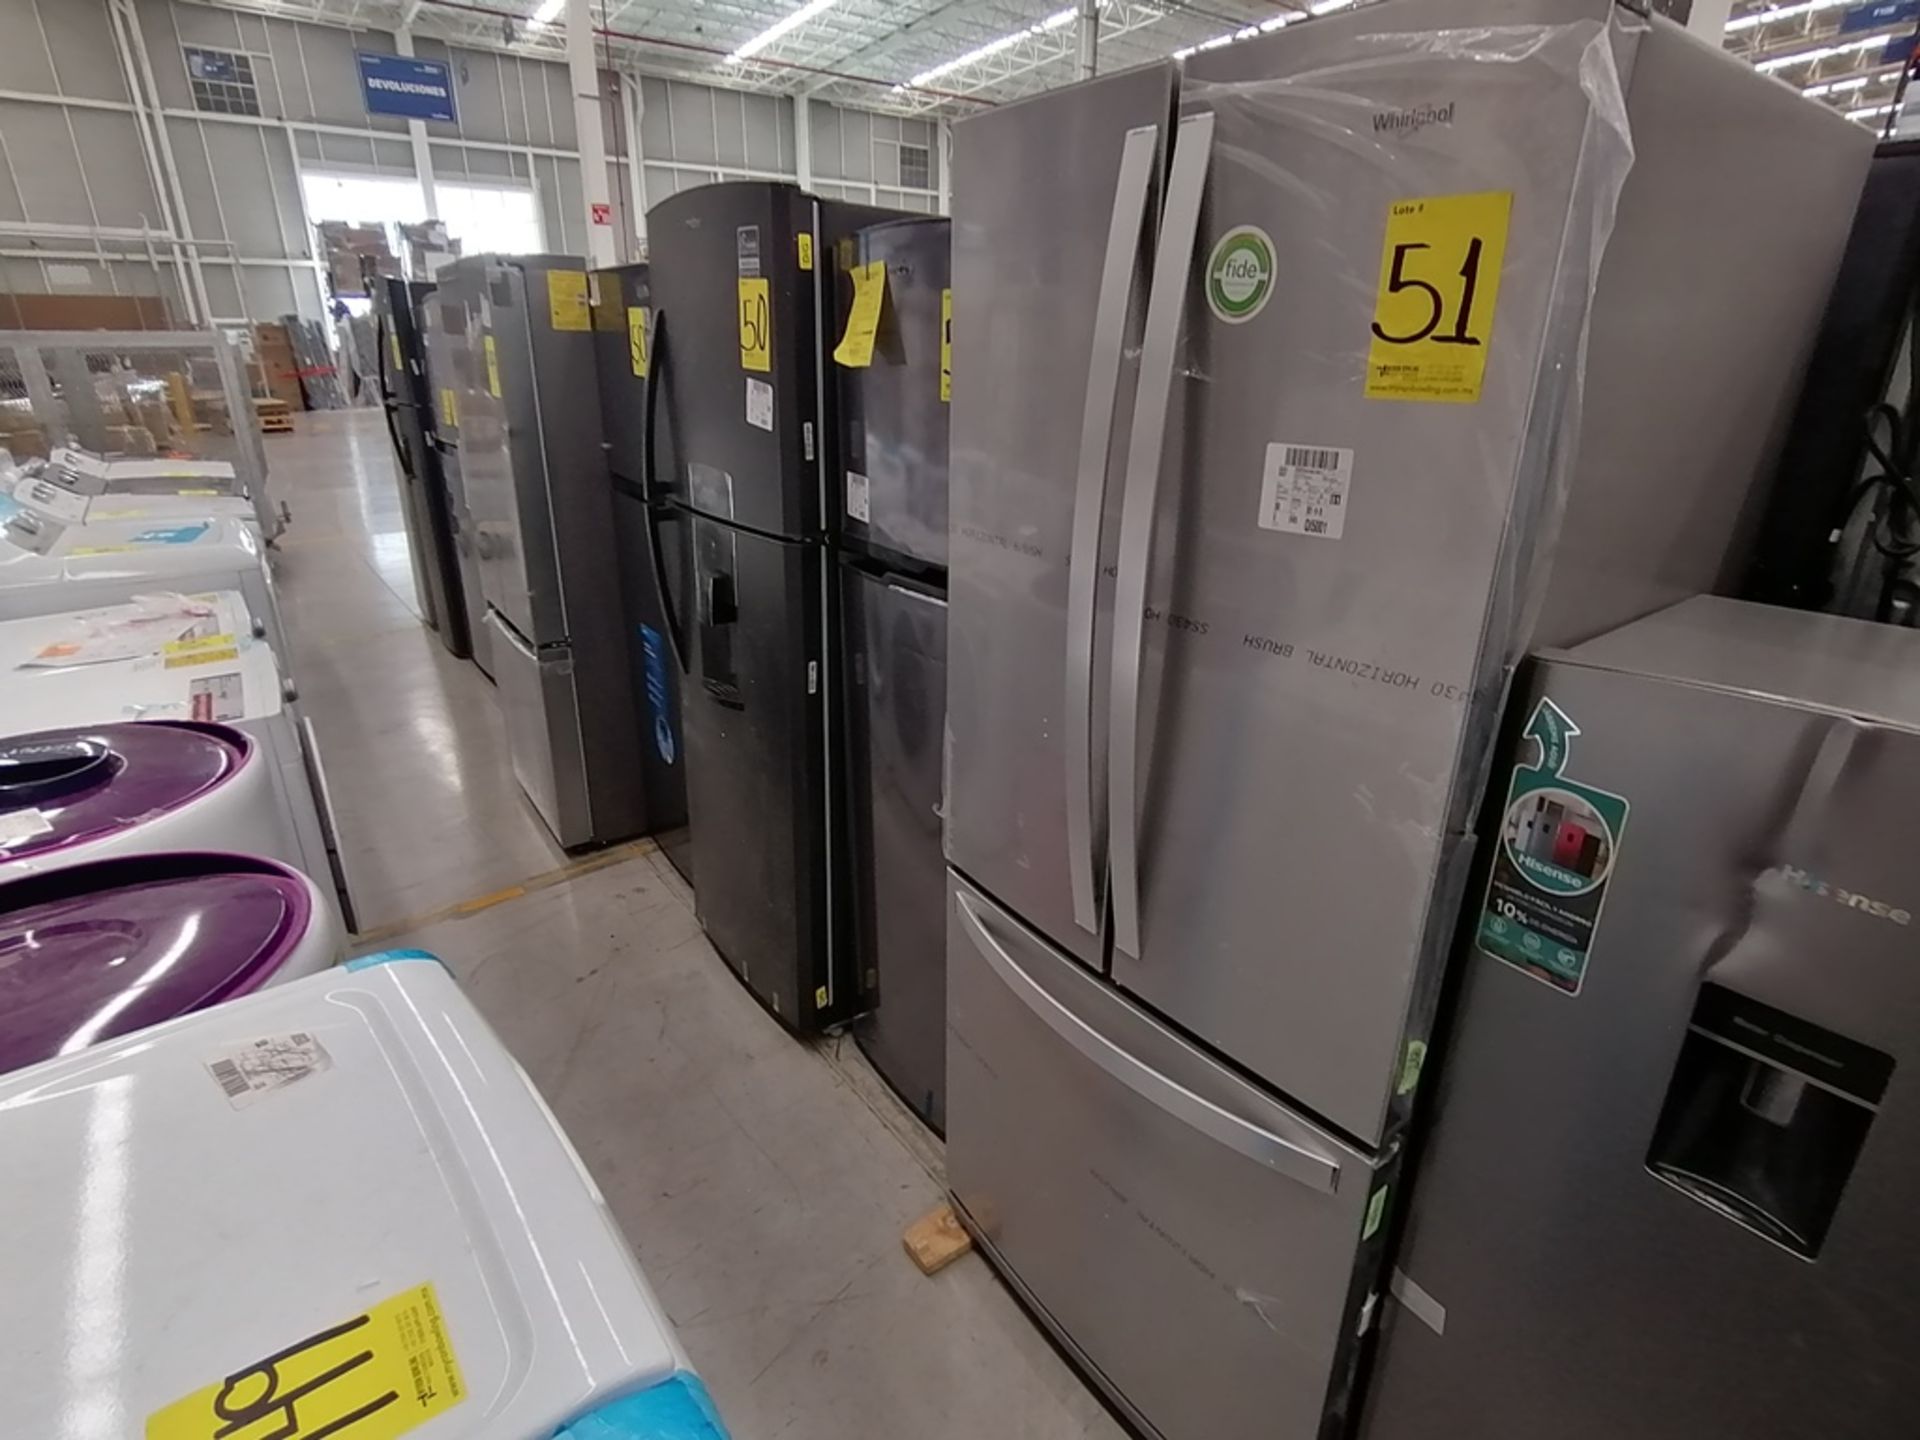 Lote de 2 refrigeradores incluye: 1 Refrigerador, Marca Mabe, Modelo RMA1025VMX, Serie 2111B618024,